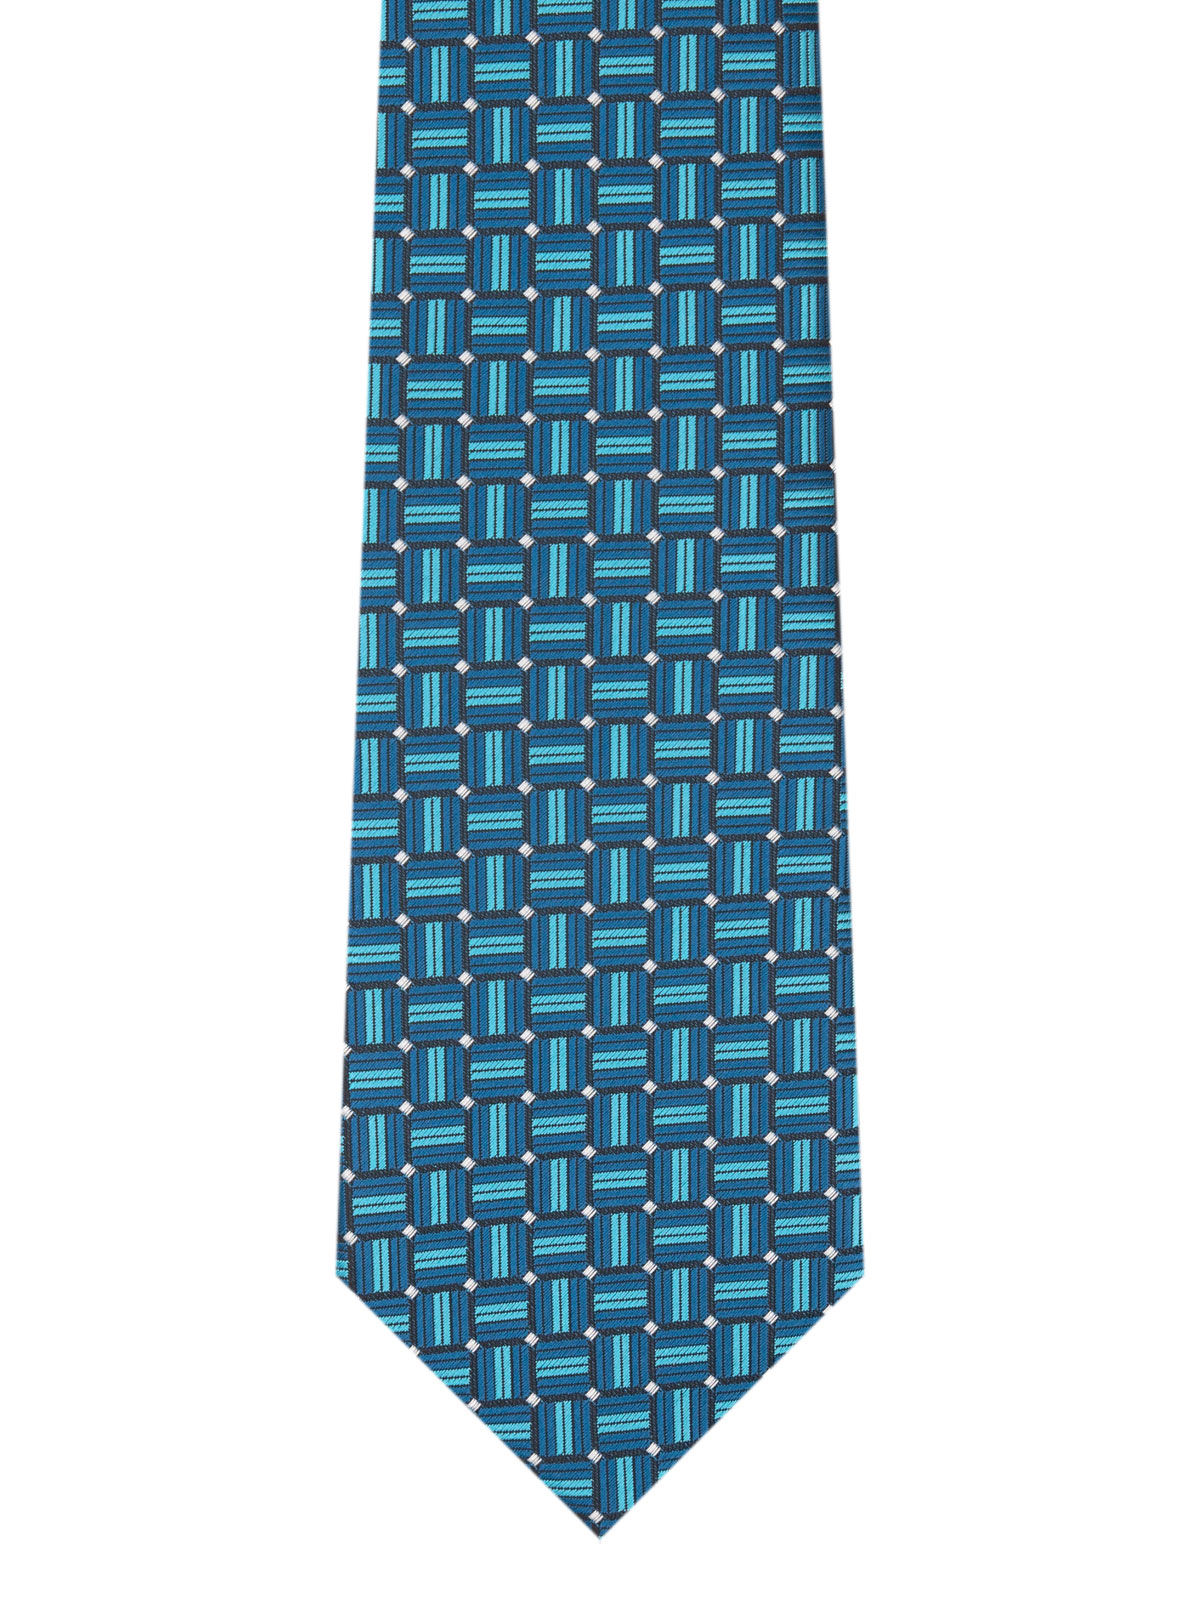 Петролено синя вратовръзка на фигури - 10168 - 25.00 лв img2